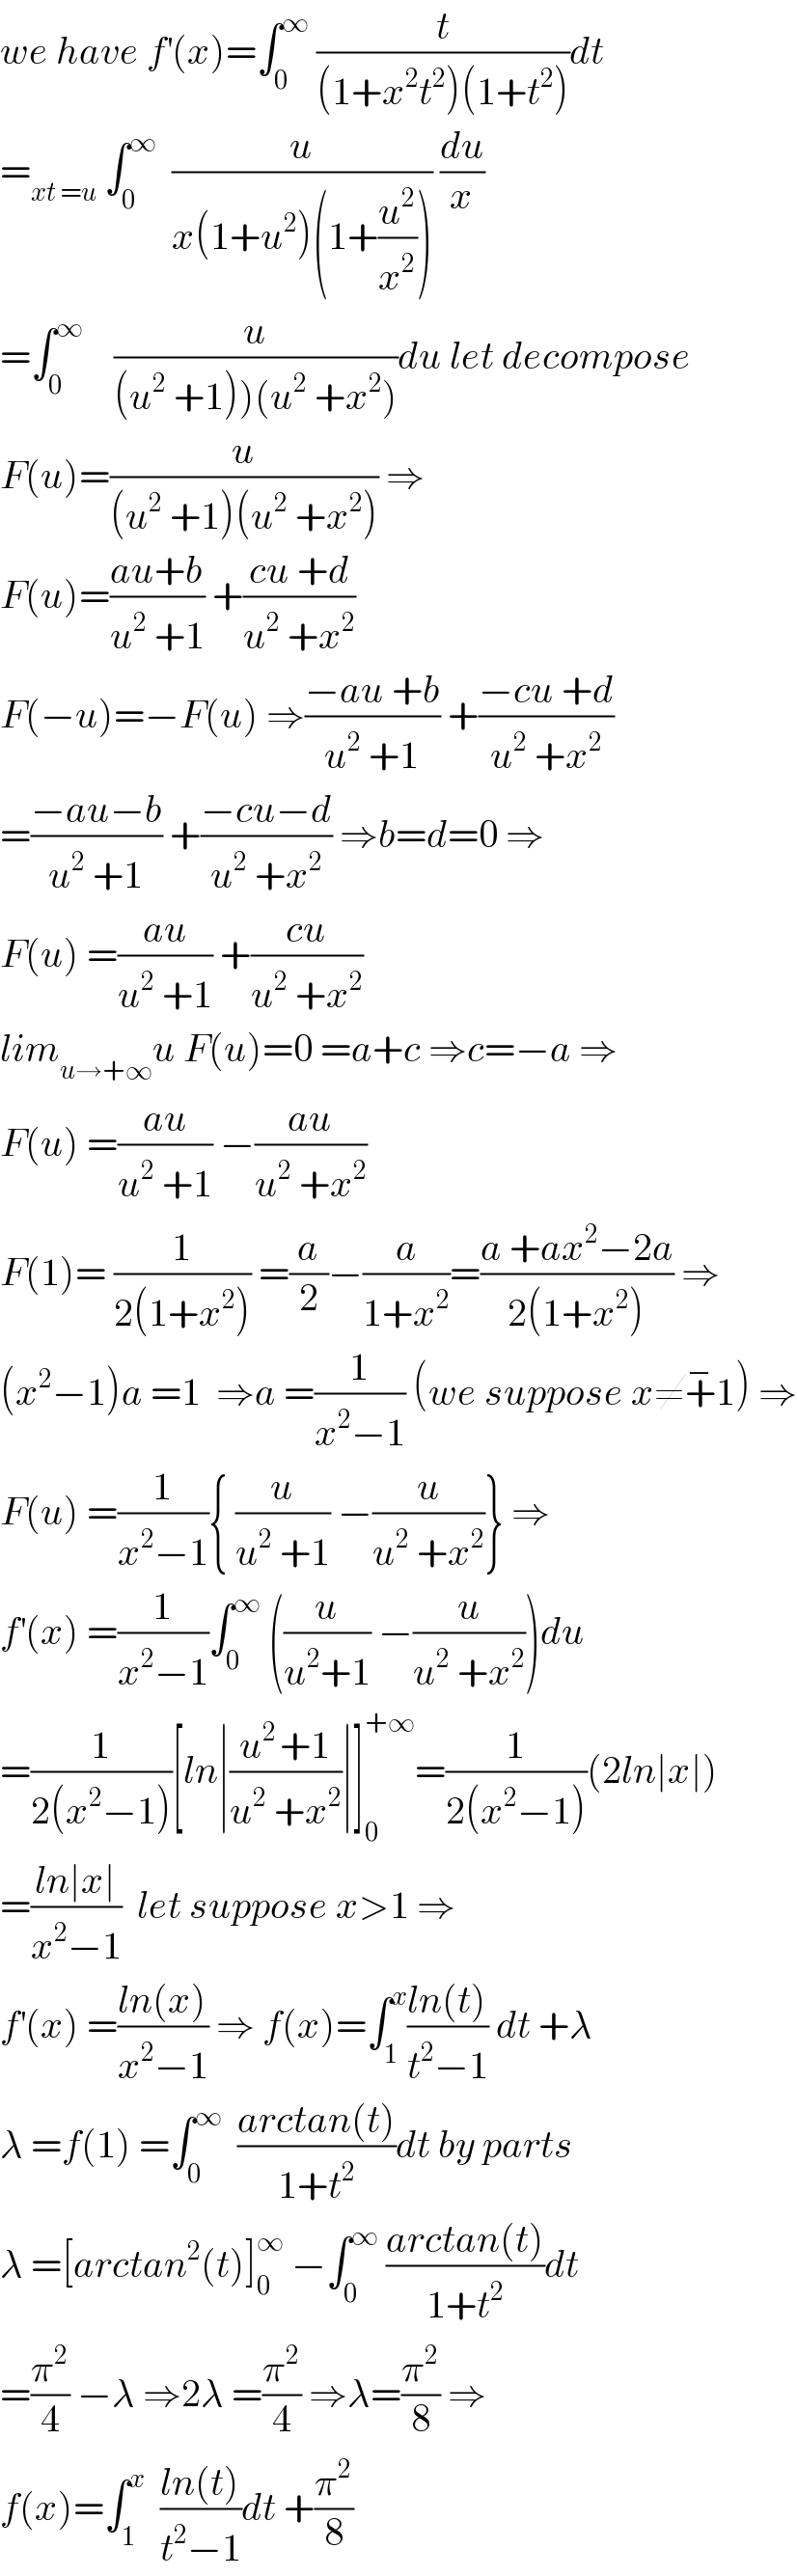 we have f^′ (x)=∫_0 ^∞  (t/((1+x^2 t^2 )(1+t^2 )))dt  =_(xt =u)  ∫_0 ^∞   (u/(x(1+u^2 )(1+(u^2 /x^2 )))) (du/x)  =∫_0 ^∞     (u/((u^2  +1))(u^2  +x^2 )))du let decompose  F(u)=(u/((u^2  +1)(u^2  +x^2 ))) ⇒  F(u)=((au+b)/(u^2  +1)) +((cu +d)/(u^2  +x^2 ))  F(−u)=−F(u) ⇒((−au +b)/(u^2  +1)) +((−cu +d)/(u^2  +x^2 ))  =((−au−b)/(u^2  +1)) +((−cu−d)/(u^2  +x^2 )) ⇒b=d=0 ⇒  F(u) =((au)/(u^2  +1)) +((cu)/(u^2  +x^2 ))  lim_(u→+∞) u F(u)=0 =a+c ⇒c=−a ⇒  F(u) =((au)/(u^2  +1)) −((au)/(u^2  +x^2 ))  F(1)= (1/(2(1+x^2 ))) =(a/2)−(a/(1+x^2 ))=((a +ax^2 −2a)/(2(1+x^2 ))) ⇒  (x^2 −1)a =1  ⇒a =(1/(x^2 −1)) (we suppose x≠+^− 1) ⇒  F(u) =(1/(x^2 −1)){ (u/(u^2  +1)) −(u/(u^2  +x^2 ))} ⇒  f^′ (x) =(1/(x^2 −1))∫_0 ^∞  ((u/(u^2 +1)) −(u/(u^2  +x^2 )))du  =(1/(2(x^2 −1)))[ln∣((u^(2 ) +1)/(u^2  +x^2 ))∣]_0 ^(+∞) =(1/(2(x^2 −1)))(2ln∣x∣)  =((ln∣x∣)/(x^2 −1))  let suppose x>1 ⇒  f^′ (x) =((ln(x))/(x^2 −1)) ⇒ f(x)=∫_1 ^x ((ln(t))/(t^2 −1)) dt +λ  λ =f(1) =∫_0 ^∞   ((arctan(t))/(1+t^2 ))dt by parts  λ =[arctan^2 (t)]_0 ^∞  −∫_0 ^∞  ((arctan(t))/(1+t^2 ))dt  =(π^2 /4) −λ ⇒2λ =(π^2 /4) ⇒λ=(π^2 /8) ⇒  f(x)=∫_1 ^x   ((ln(t))/(t^2 −1))dt +(π^2 /8)  